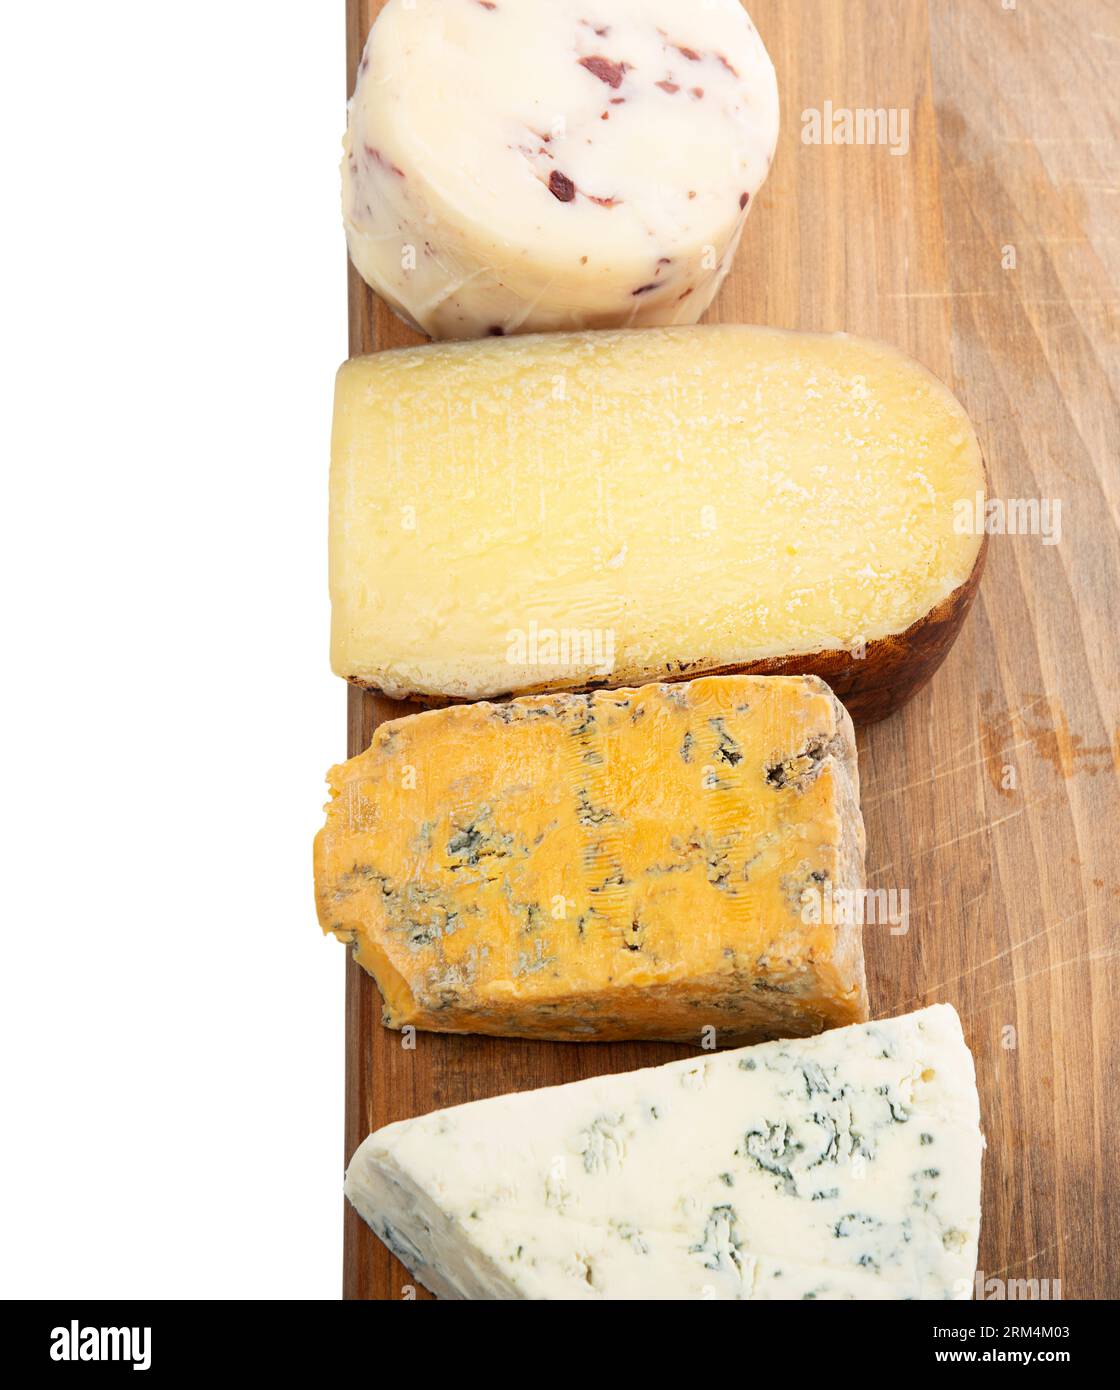 Assortiment de fromages gastronomiques sur une planche de bois. Isolé sur fond blanc. Banque D'Images